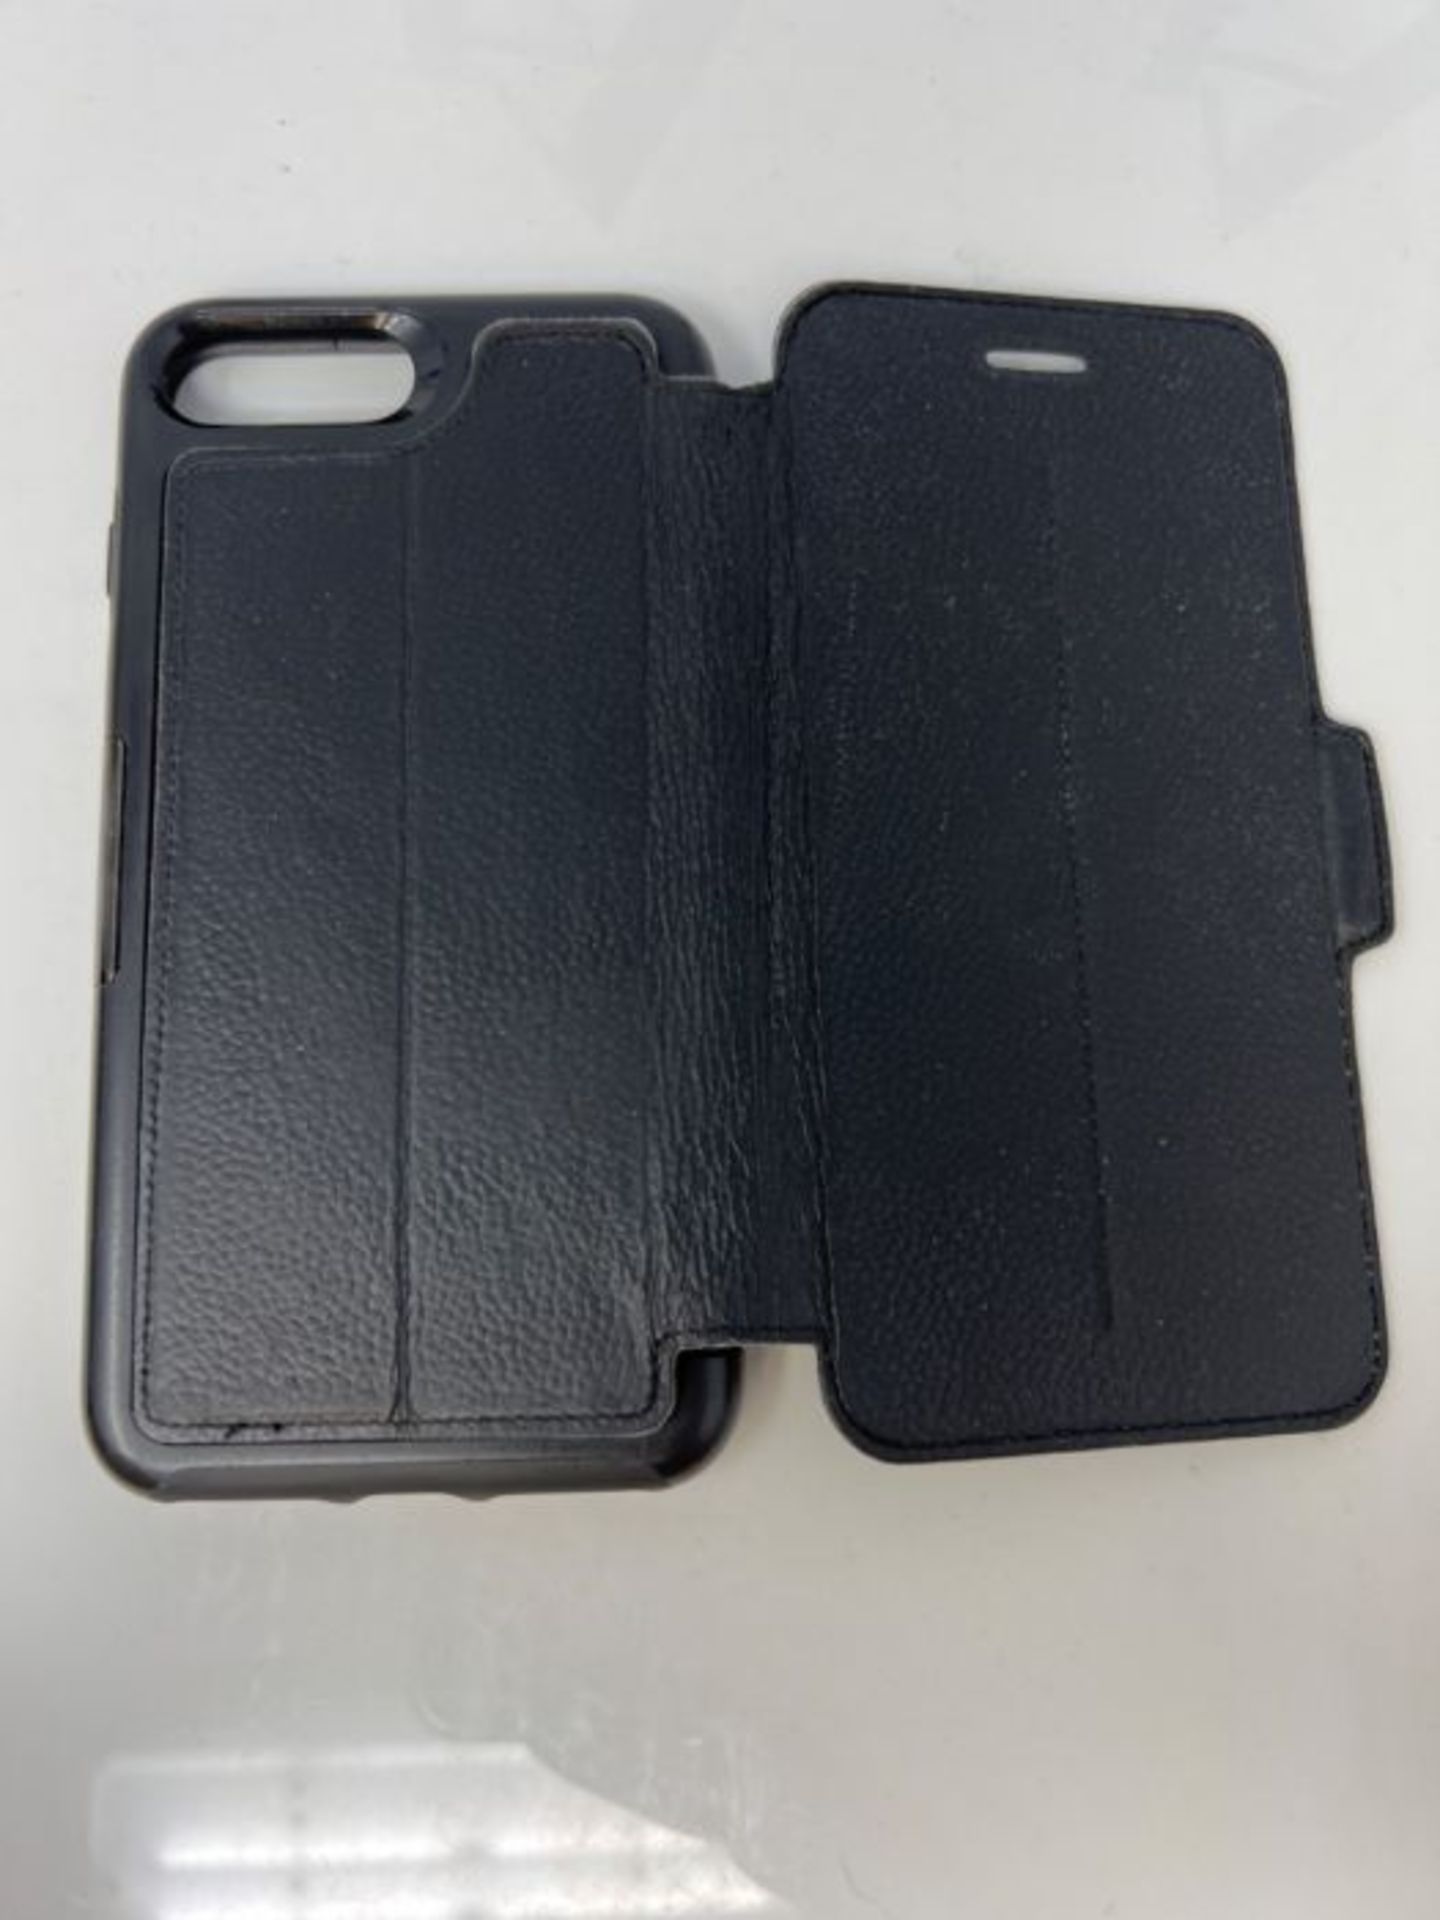 OtterBox Strada Series Premium Leather Folio Case for iPhone 7 Plus/8 Plus - Black - Image 3 of 3